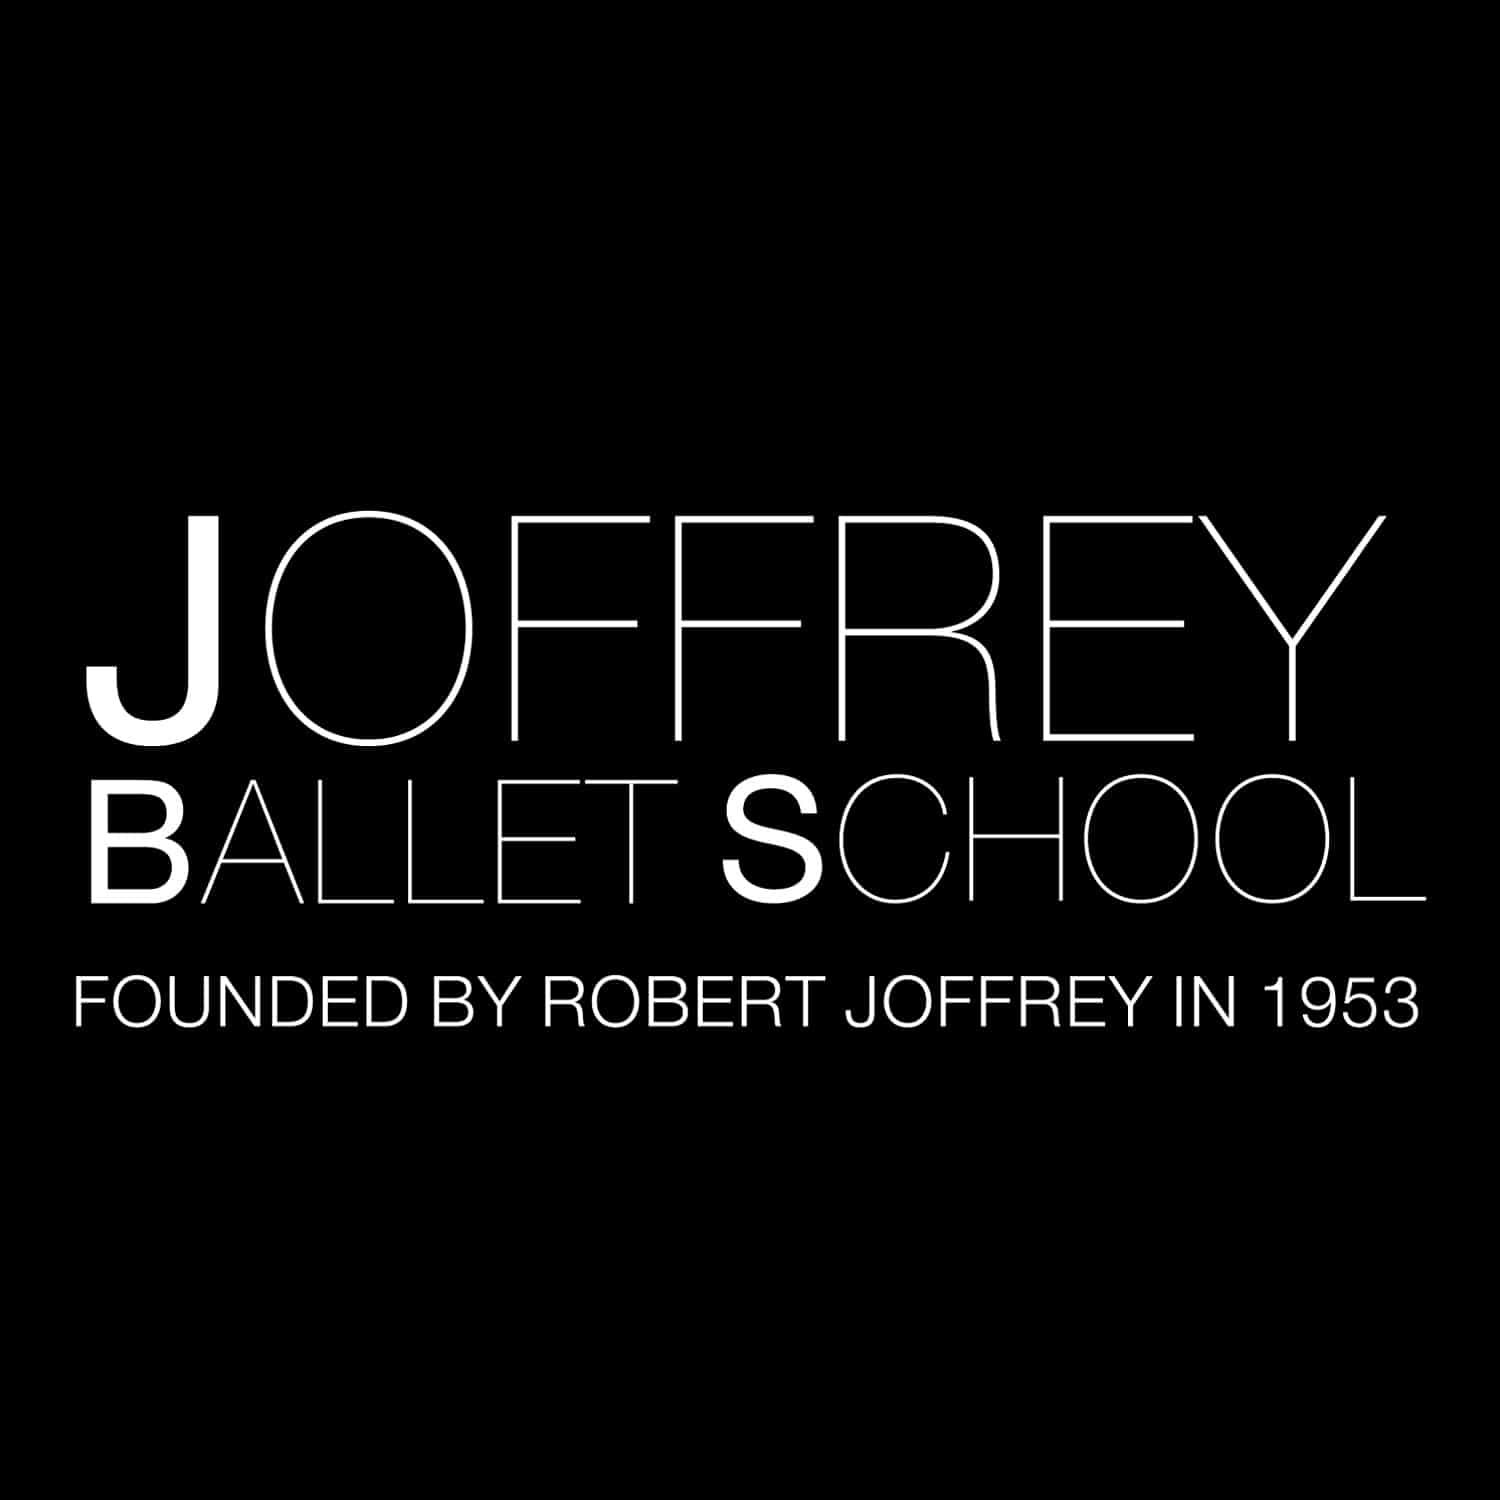 Joffrey Ballet School, Founded by Robert Joffrey in 1953